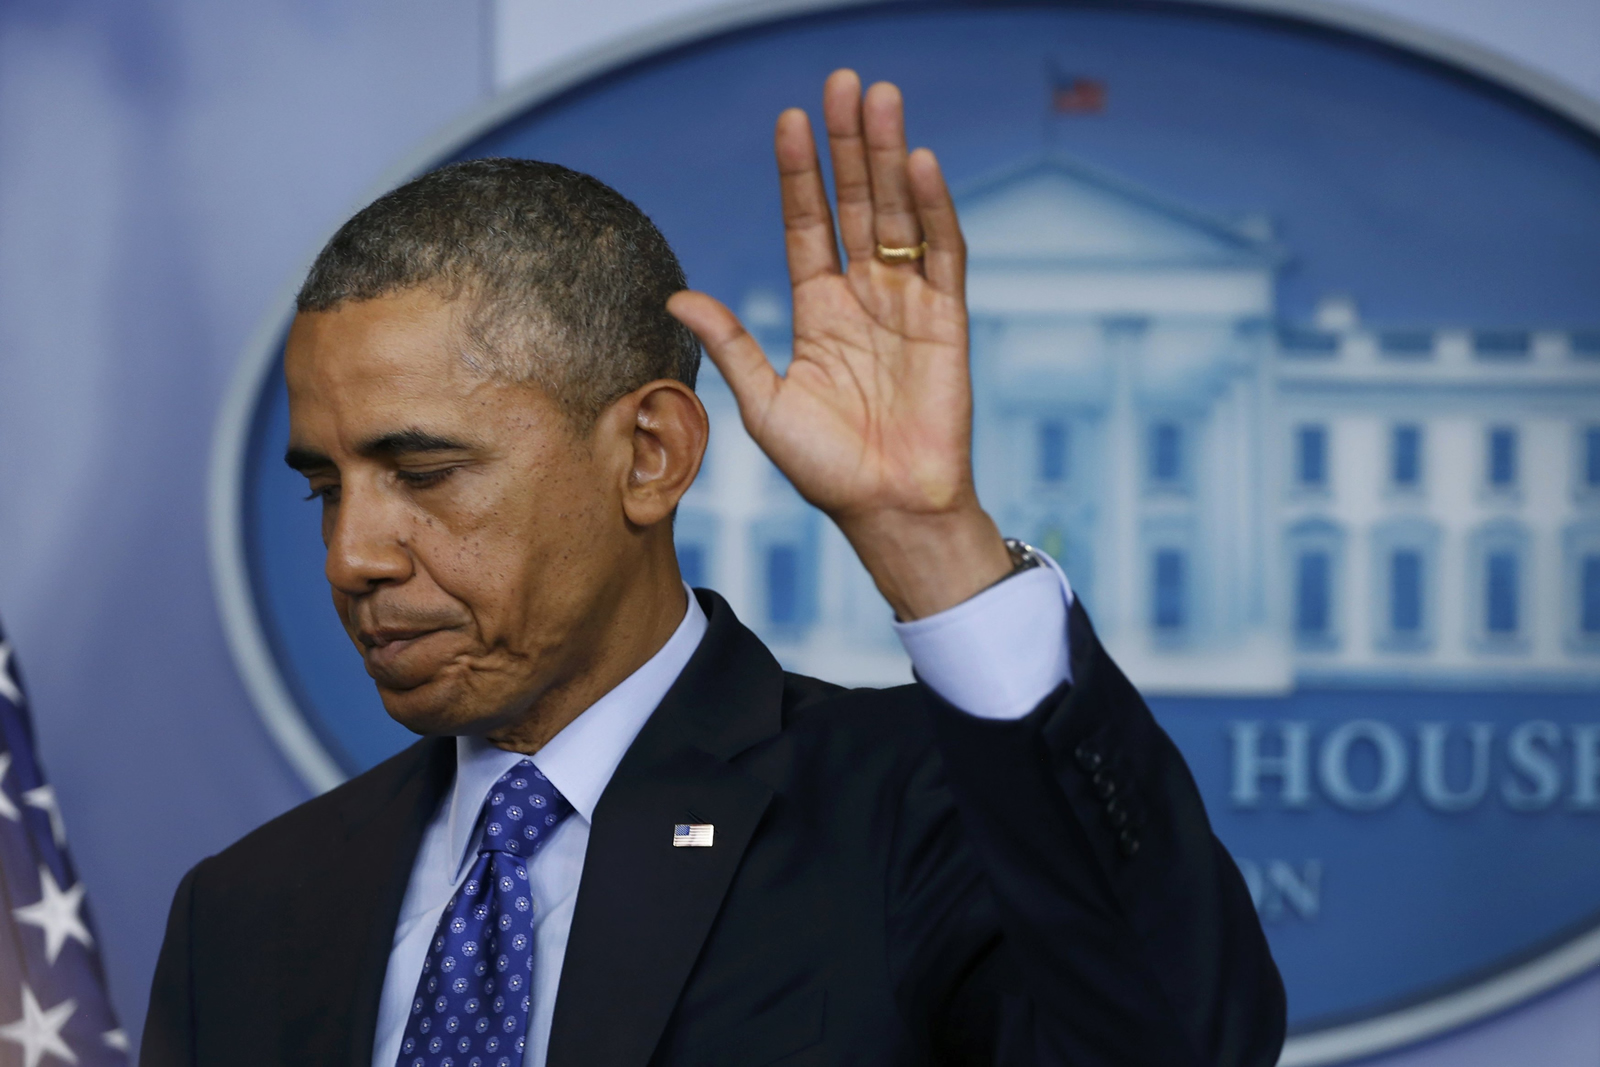 Obama responde a la sangría del ISIS con diplomacia y envío de asesores de Inteligencia a Iraq